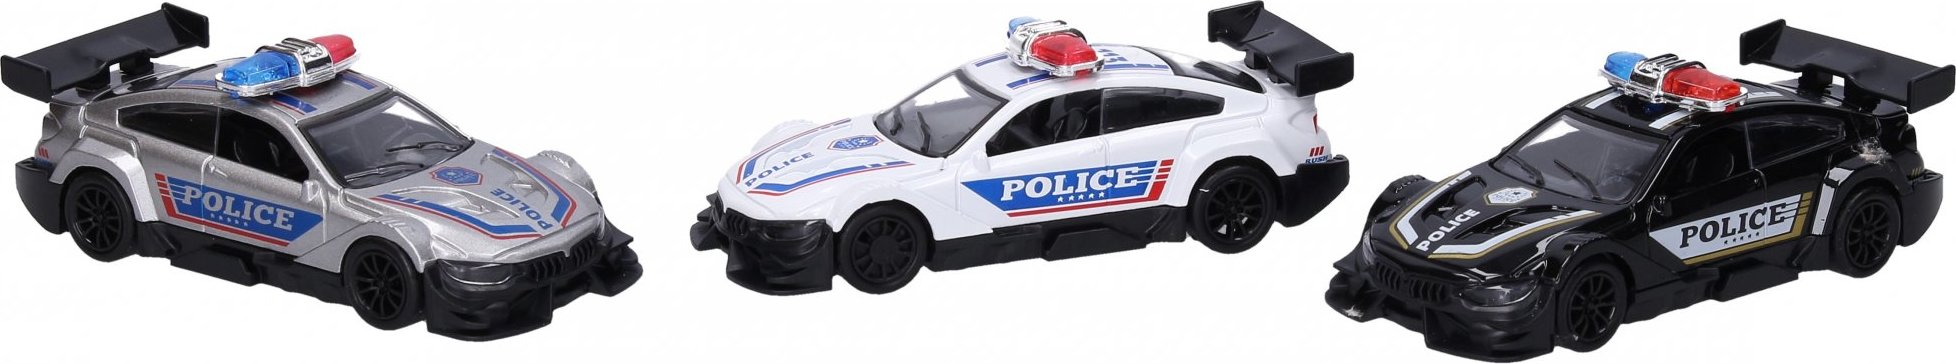 Auto policejní kovové 11 cm